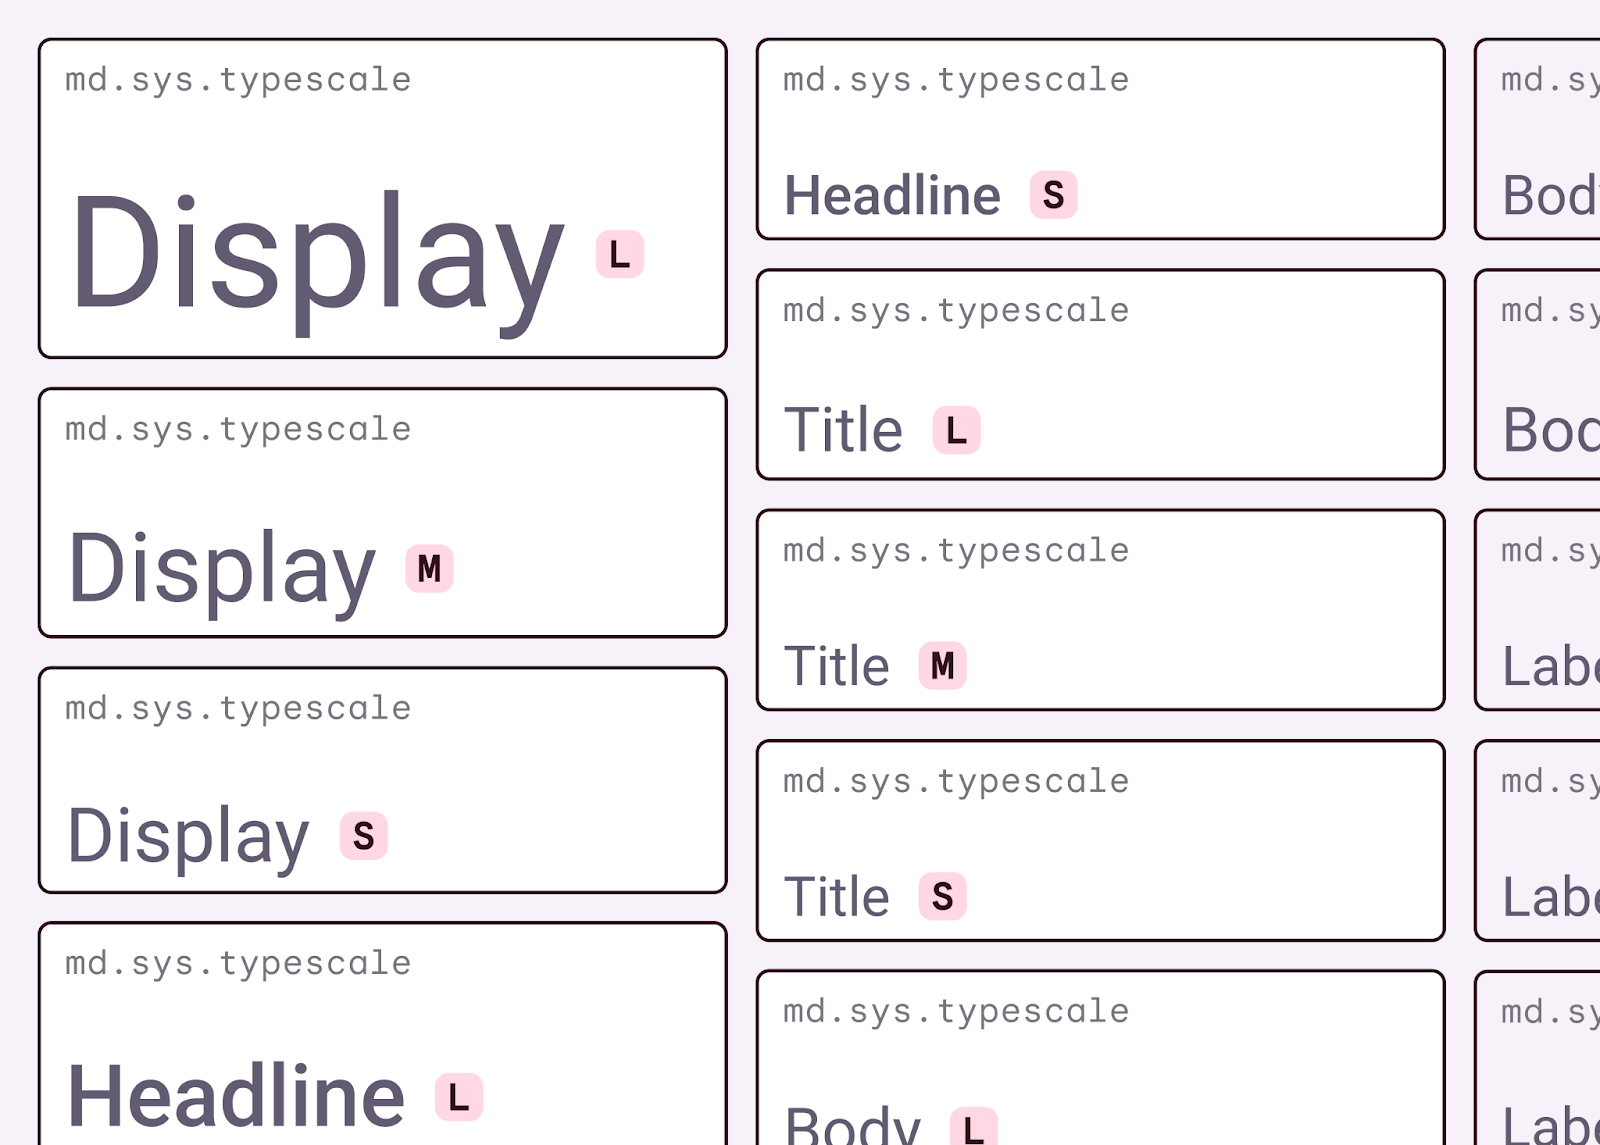 Exemples de rôles de typographie sémantique dans M3.